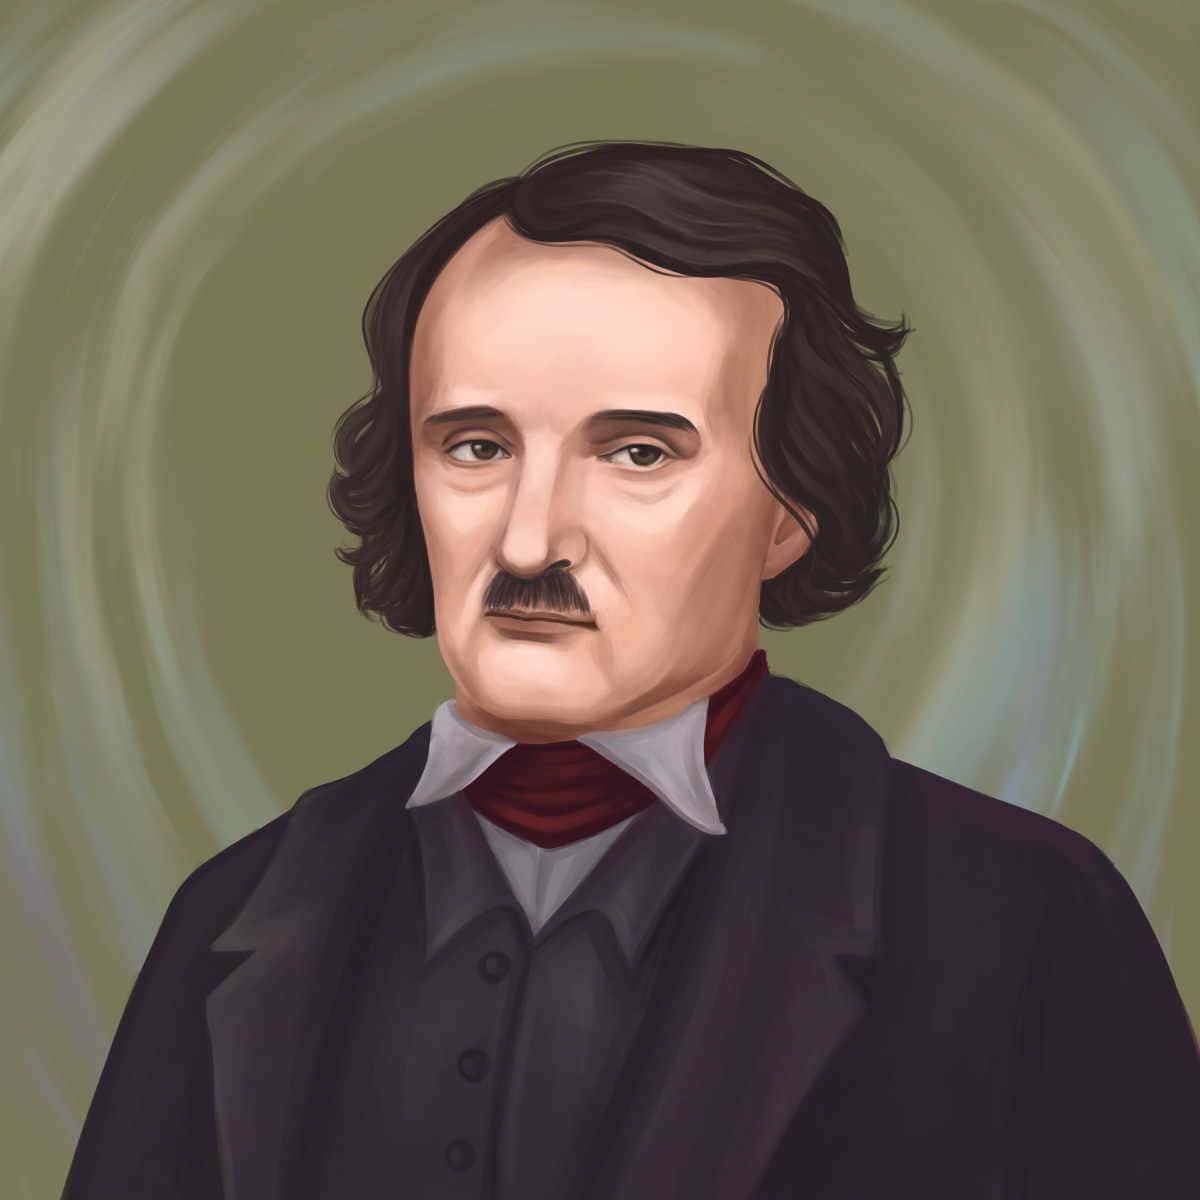 Edgar Allan Poe Illustration